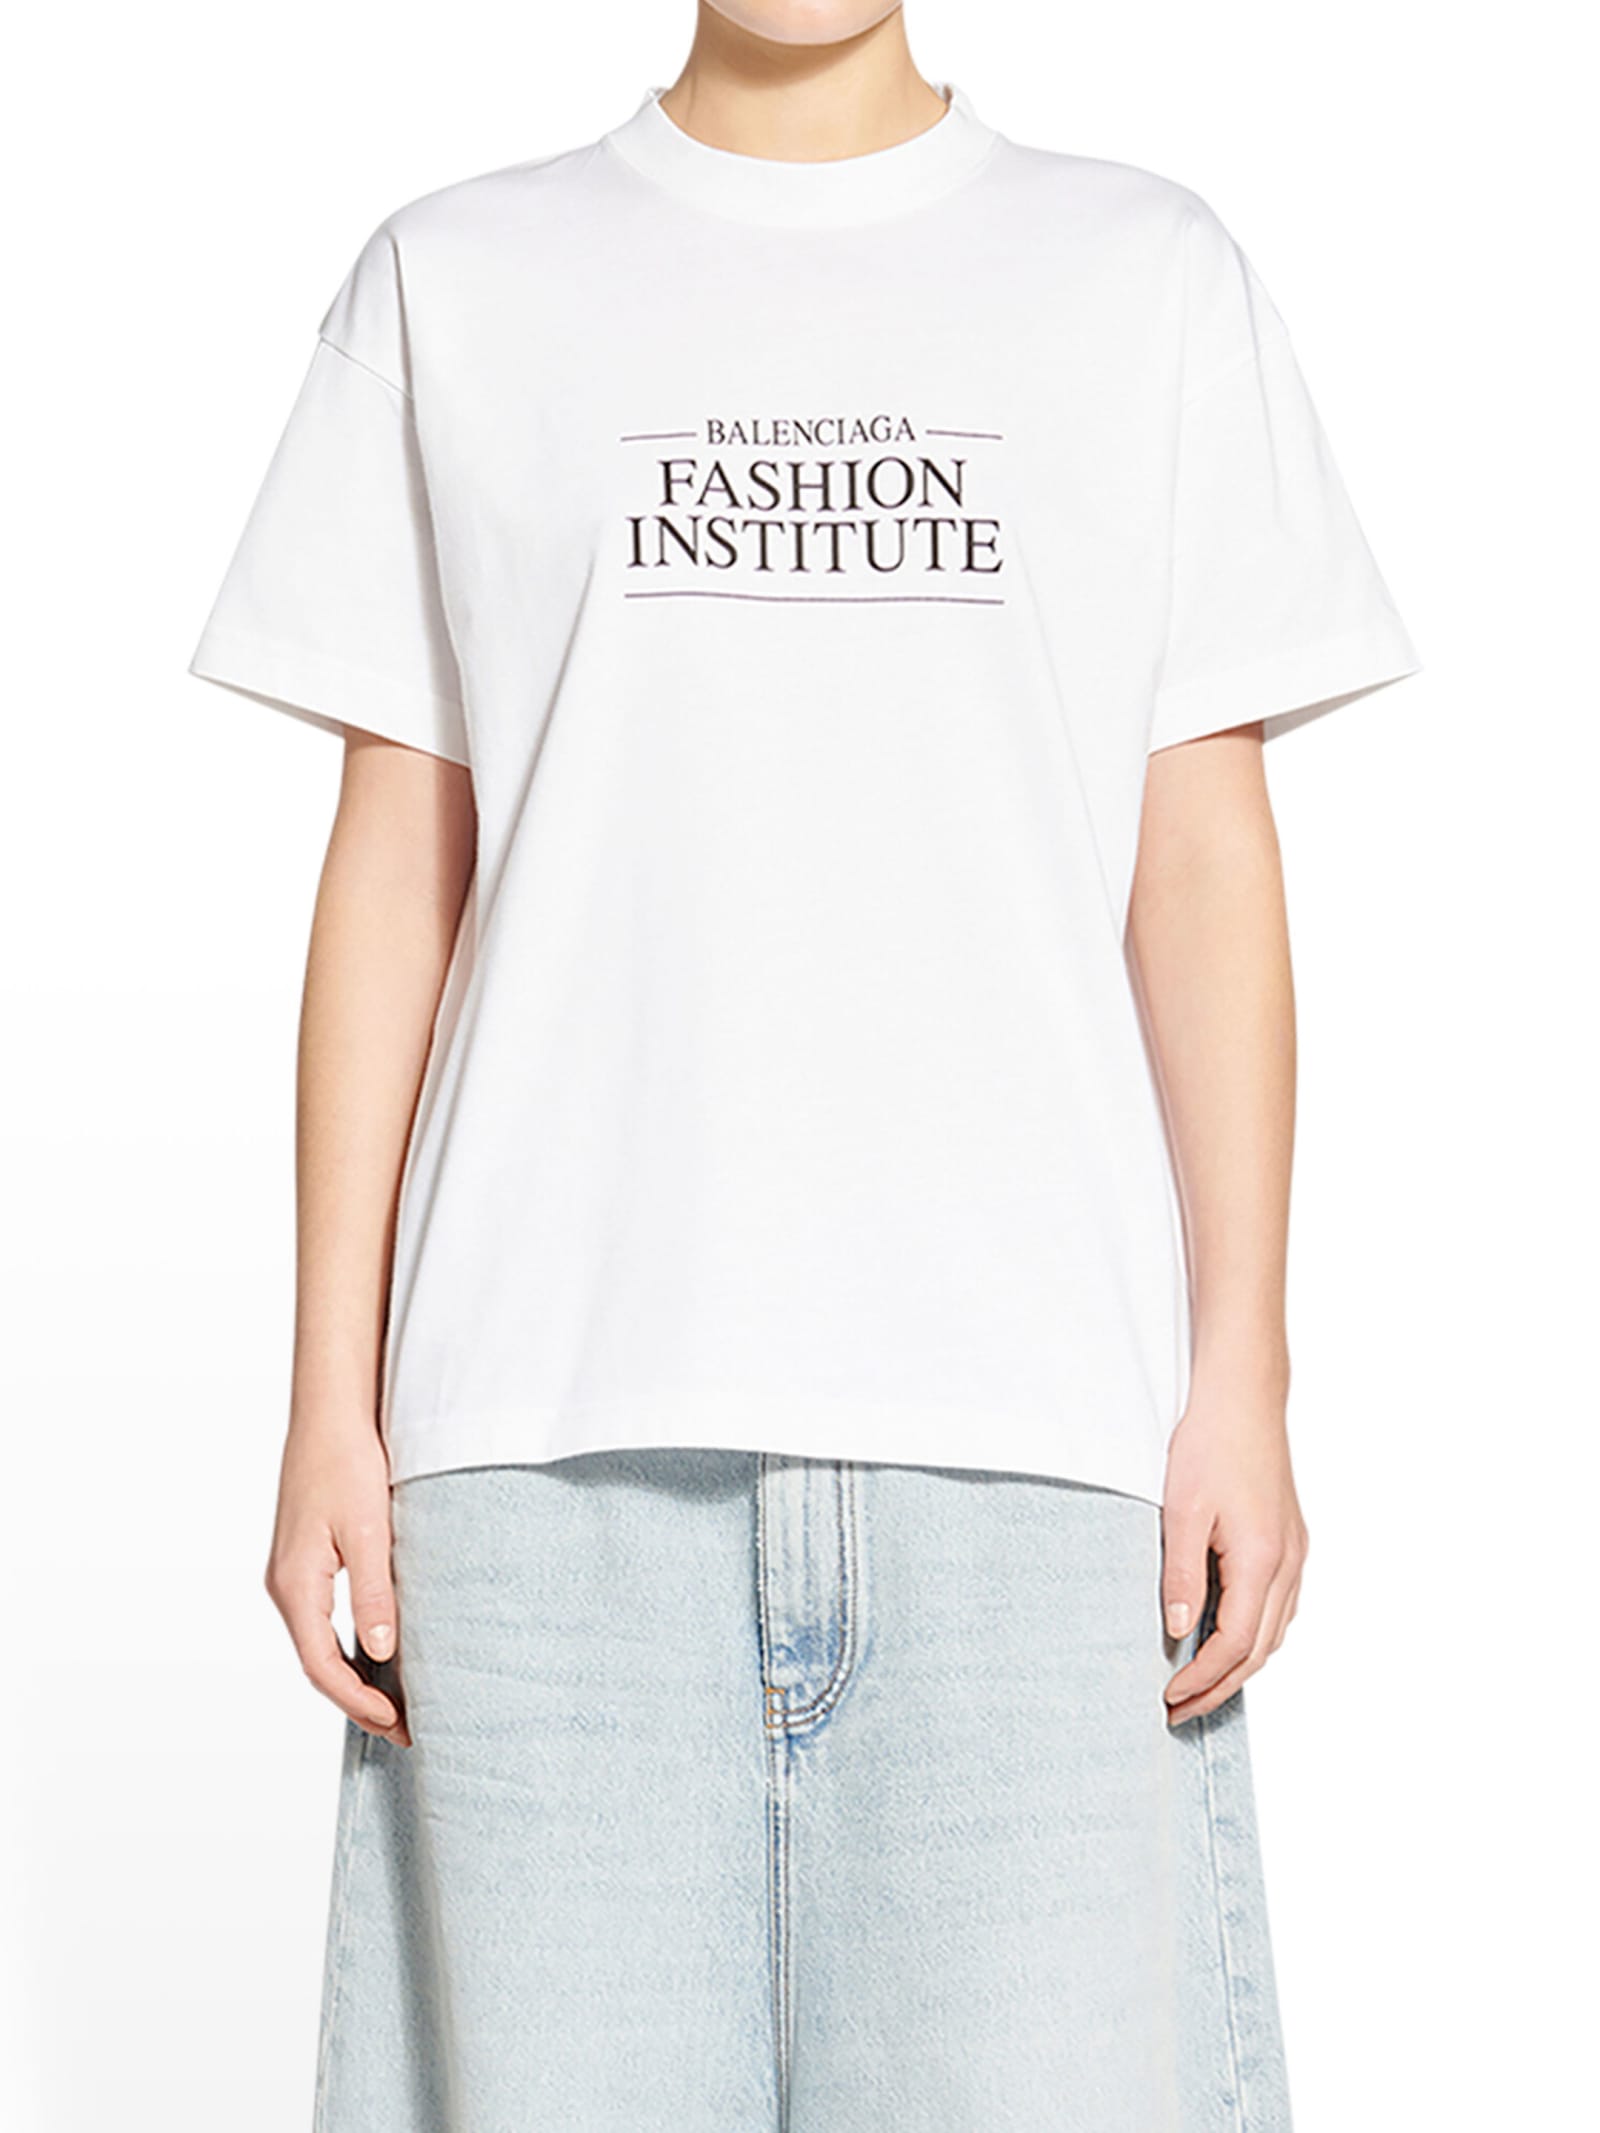 Balenciaga Fashion Institute T-shirt